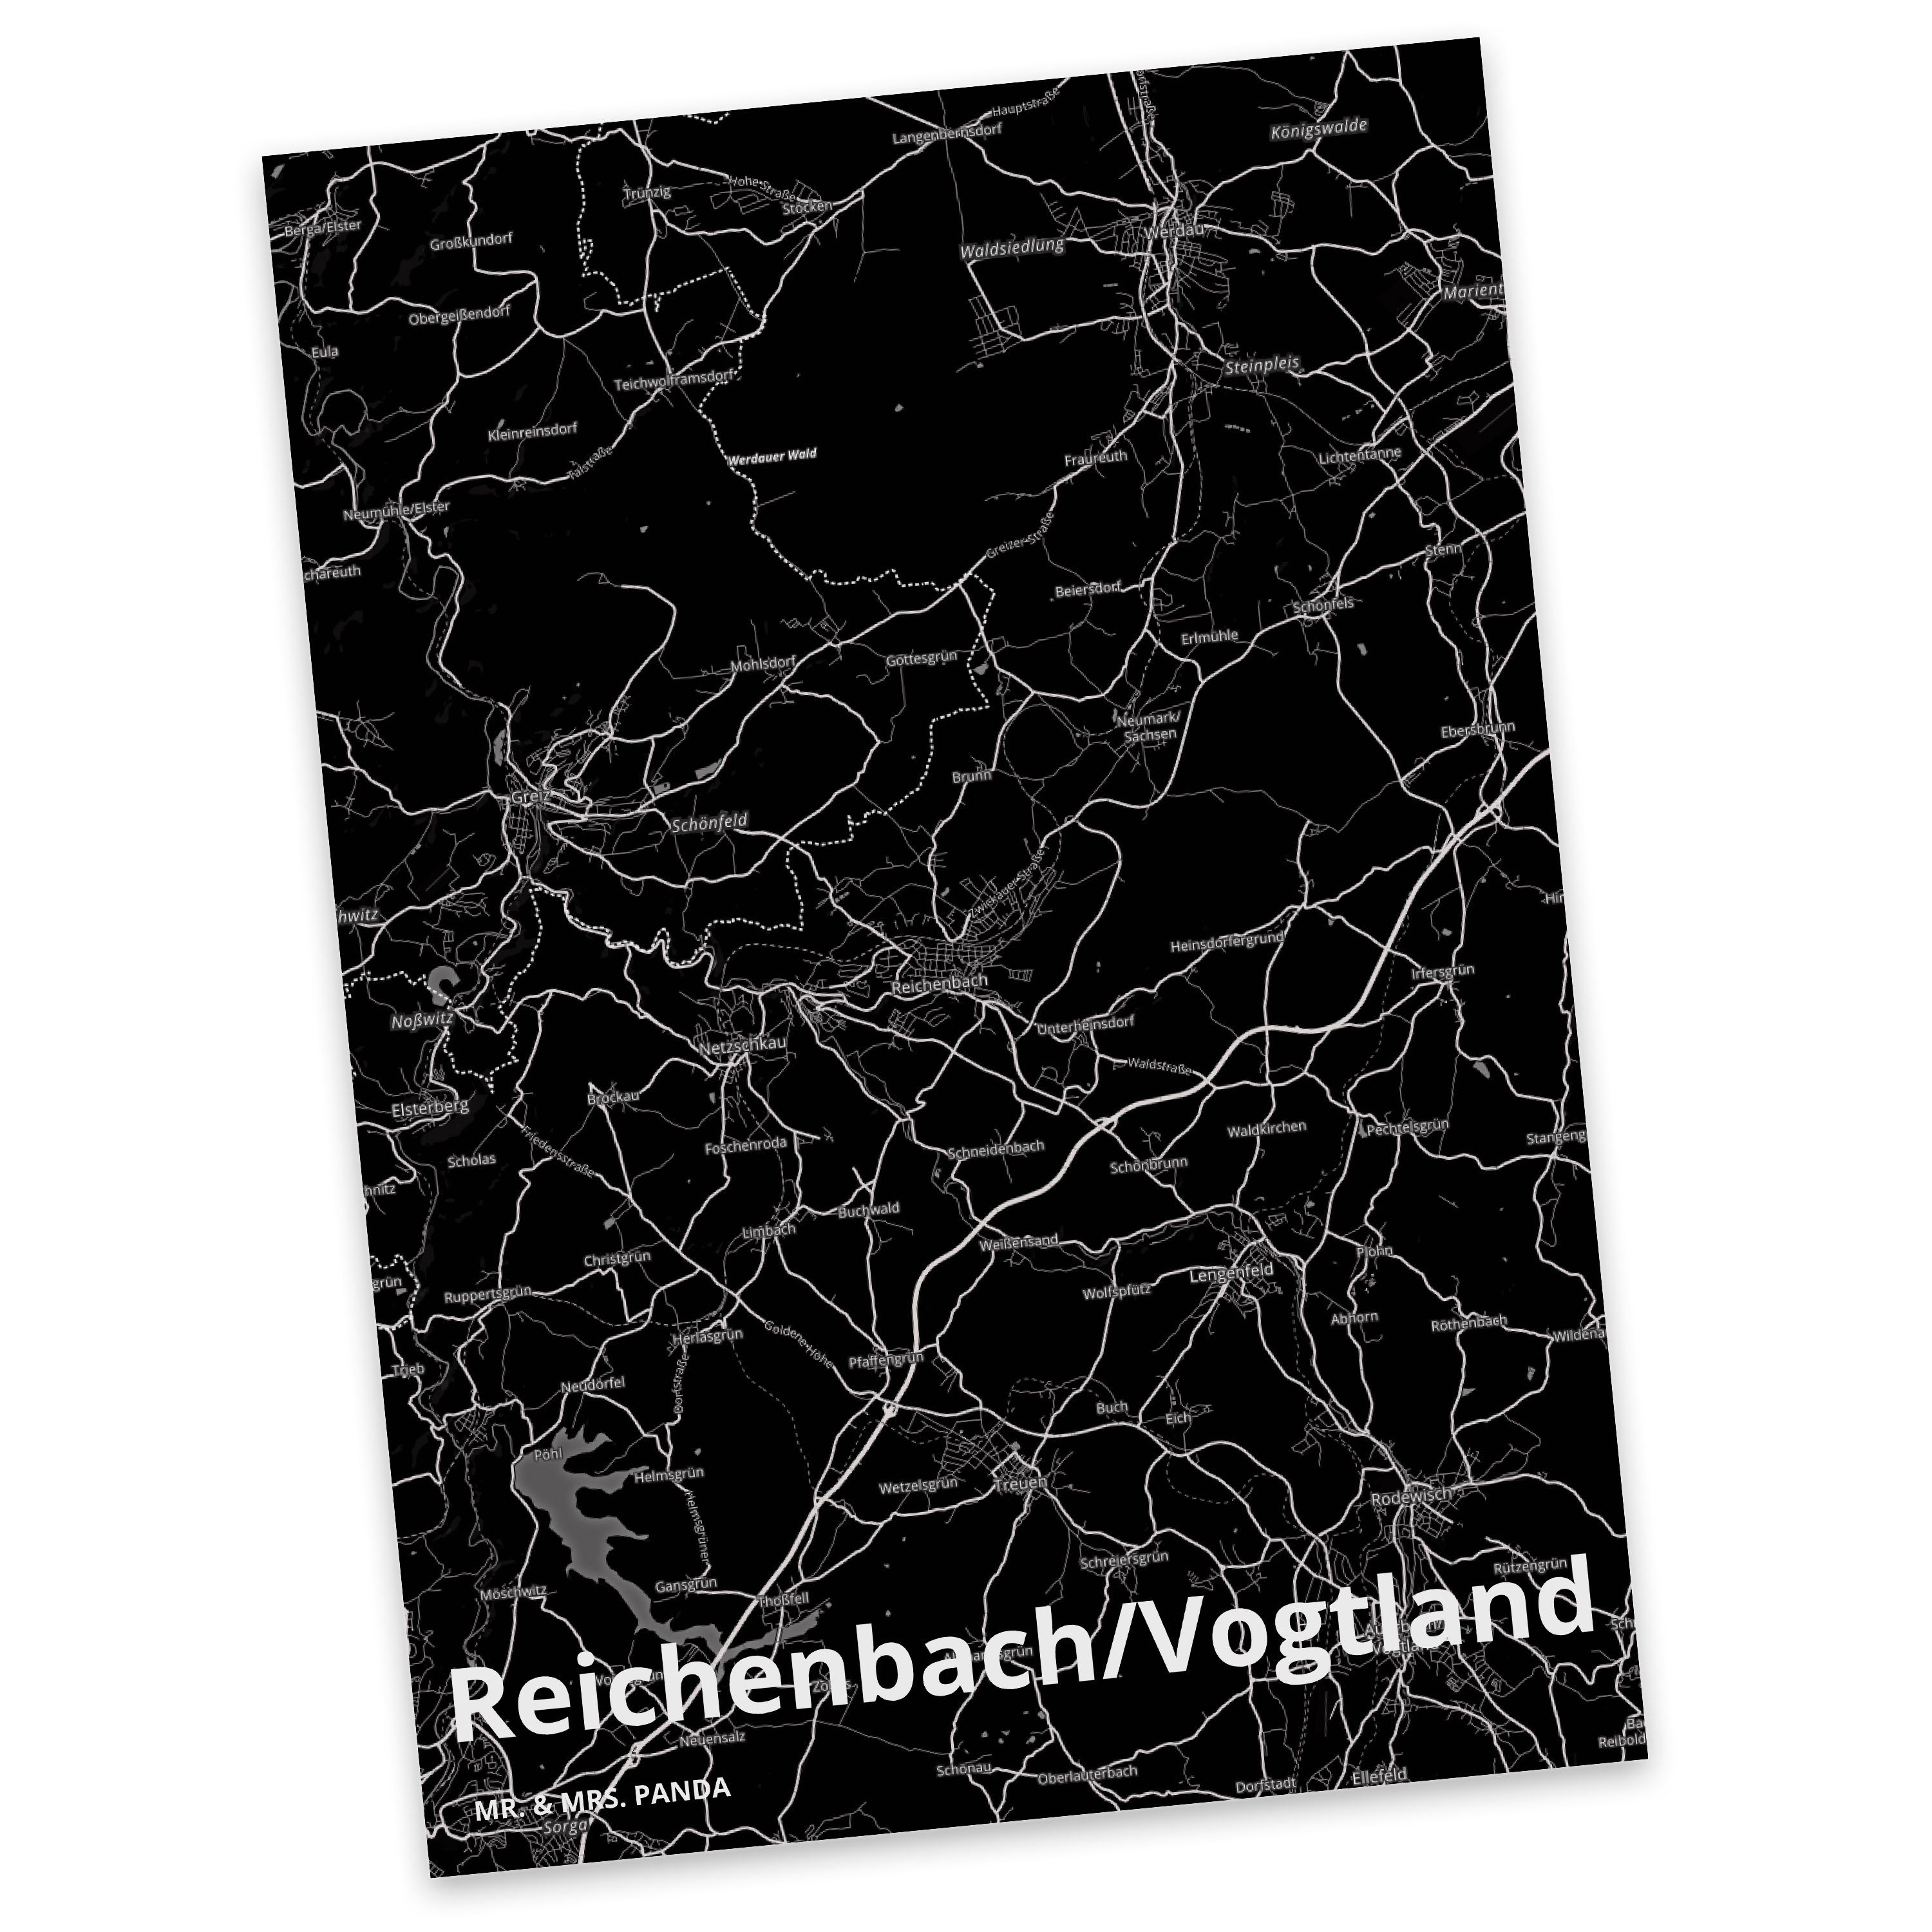 Mr. & Mrs. Panda Geschenk, Einladung Geburtstagskarte, Reichenbach/Vogtland Postkarte Karte, 